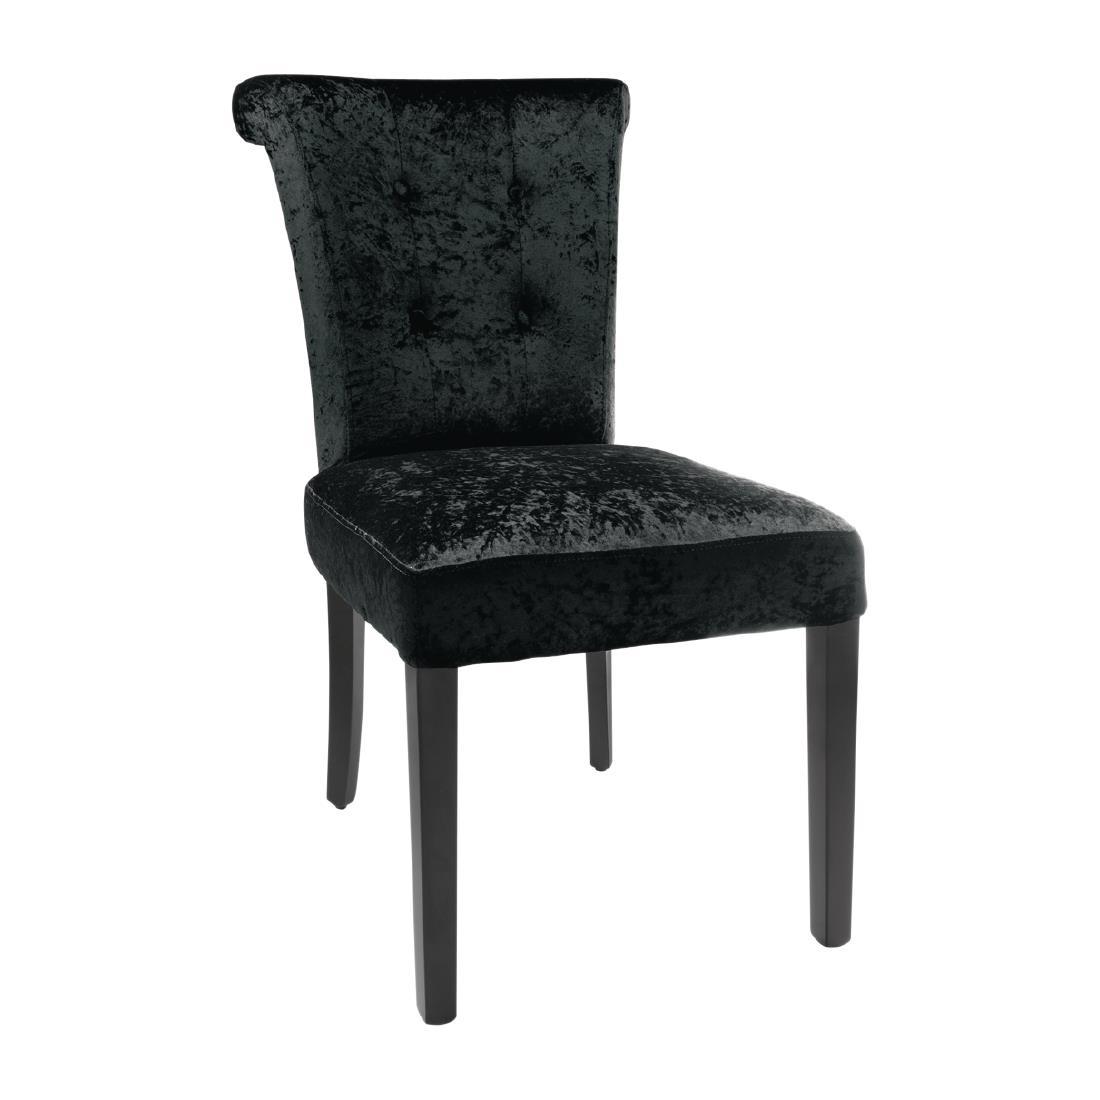 Bolero Black Crushed Velvet Dining Chair (Pack of 2) - DR307  - 1